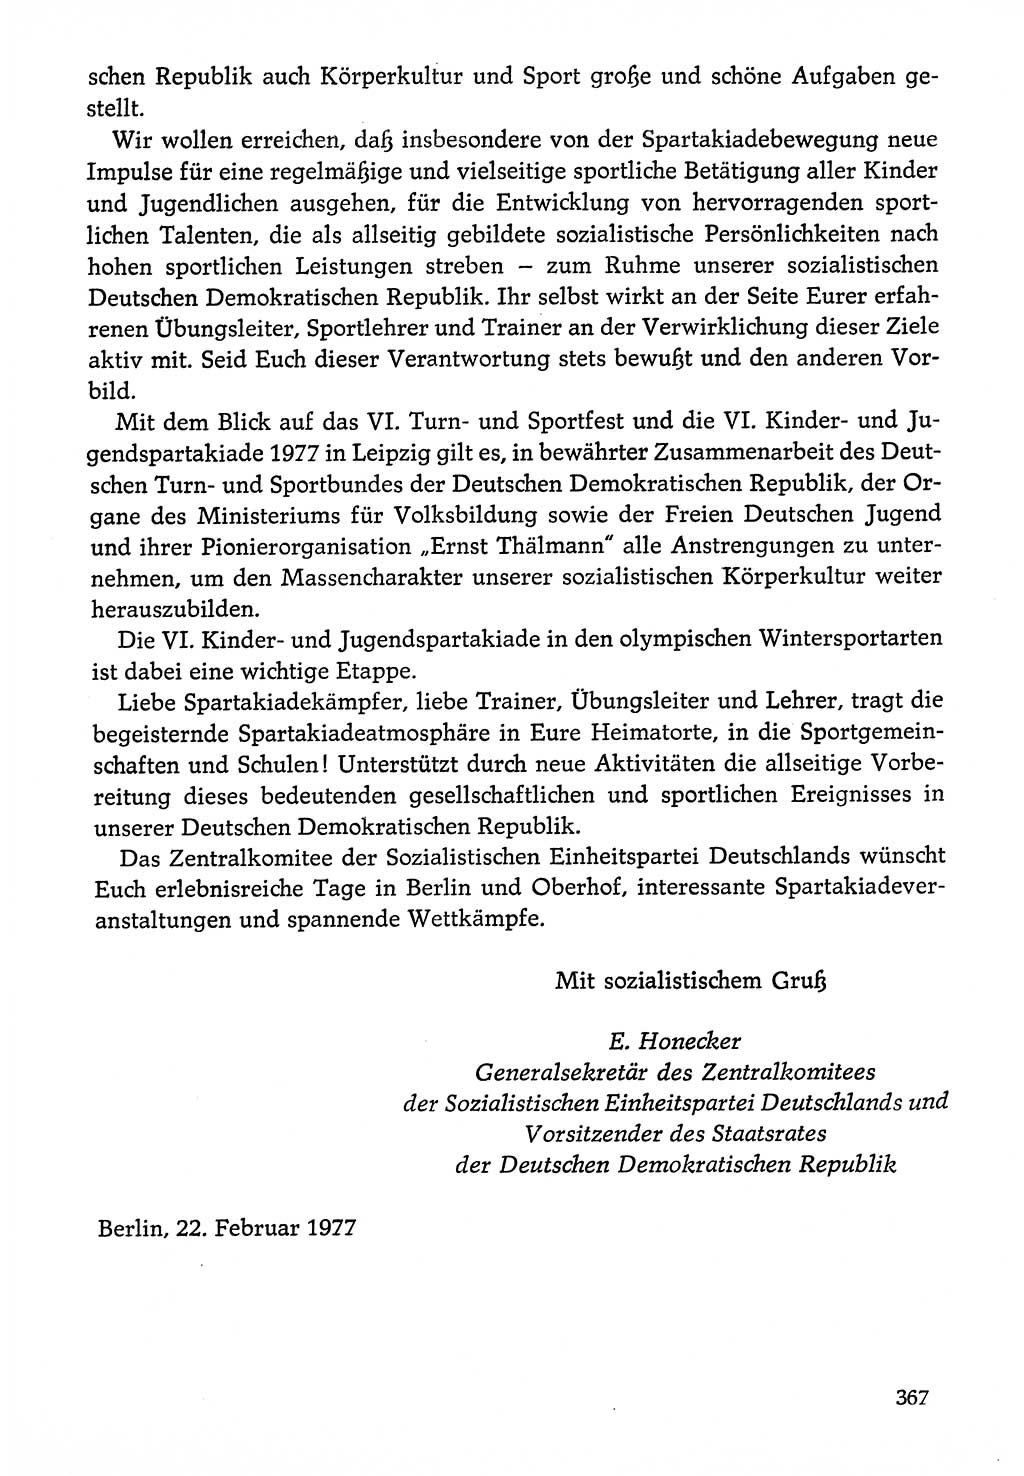 Dokumente der Sozialistischen Einheitspartei Deutschlands (SED) [Deutsche Demokratische Republik (DDR)] 1976-1977, Seite 367 (Dok. SED DDR 1976-1977, S. 367)